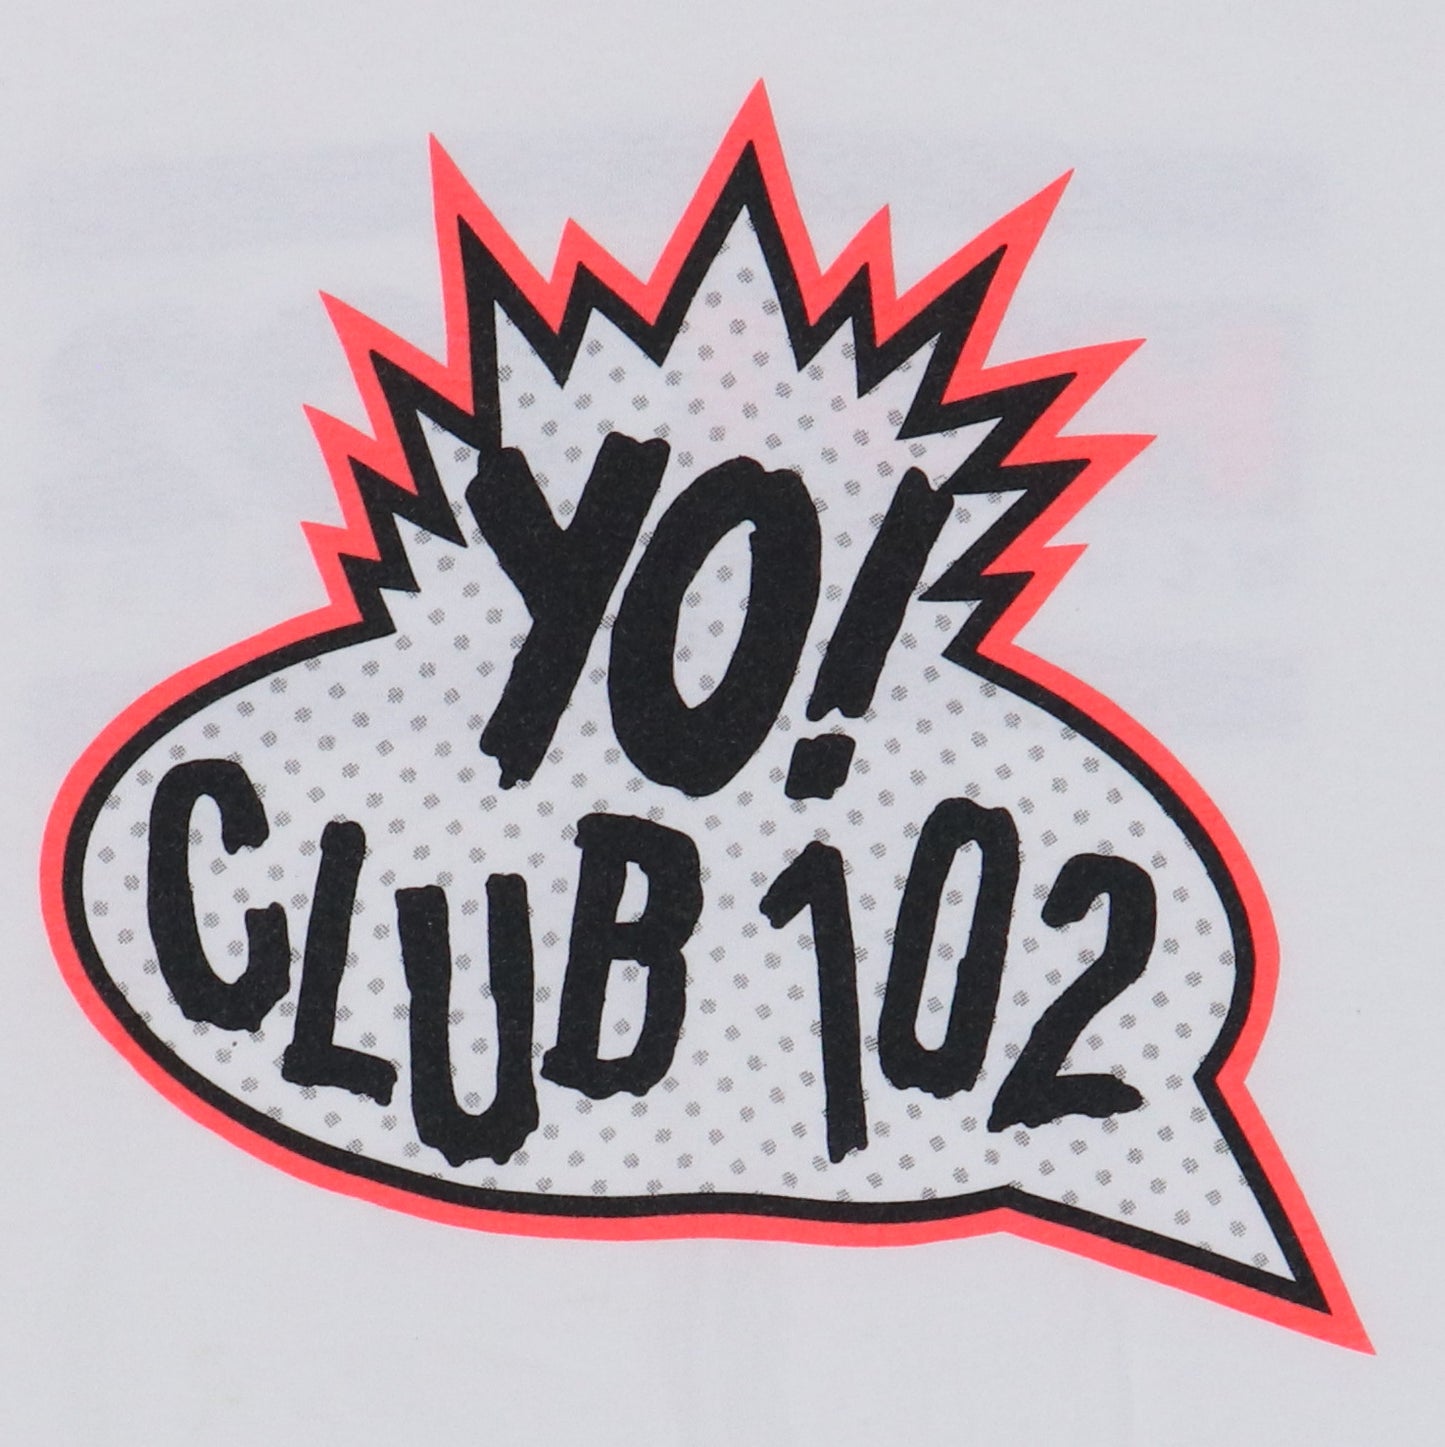 1990s Yo! Hot 102 Radio Shirt